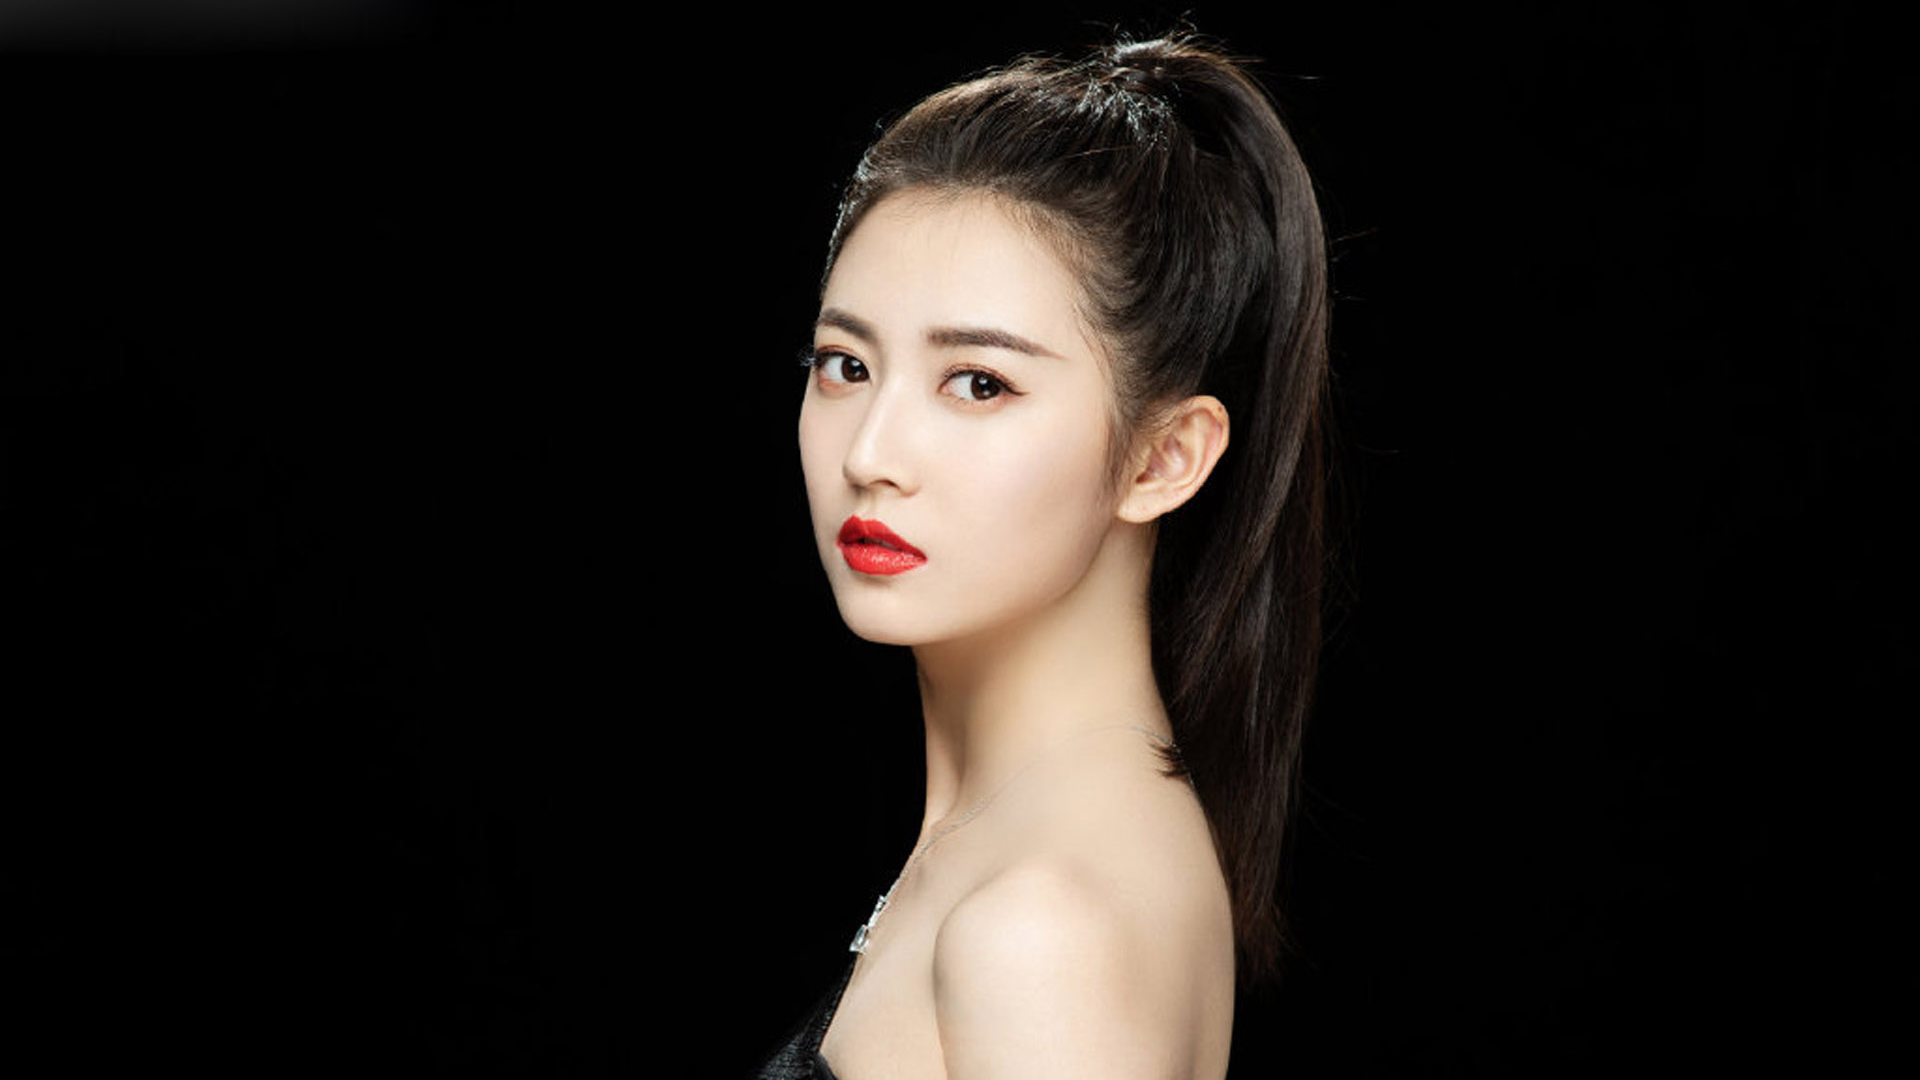 3杨紫:原名杨旎奥,1992年11月6日出生于北京市房山区,中国内地女演员